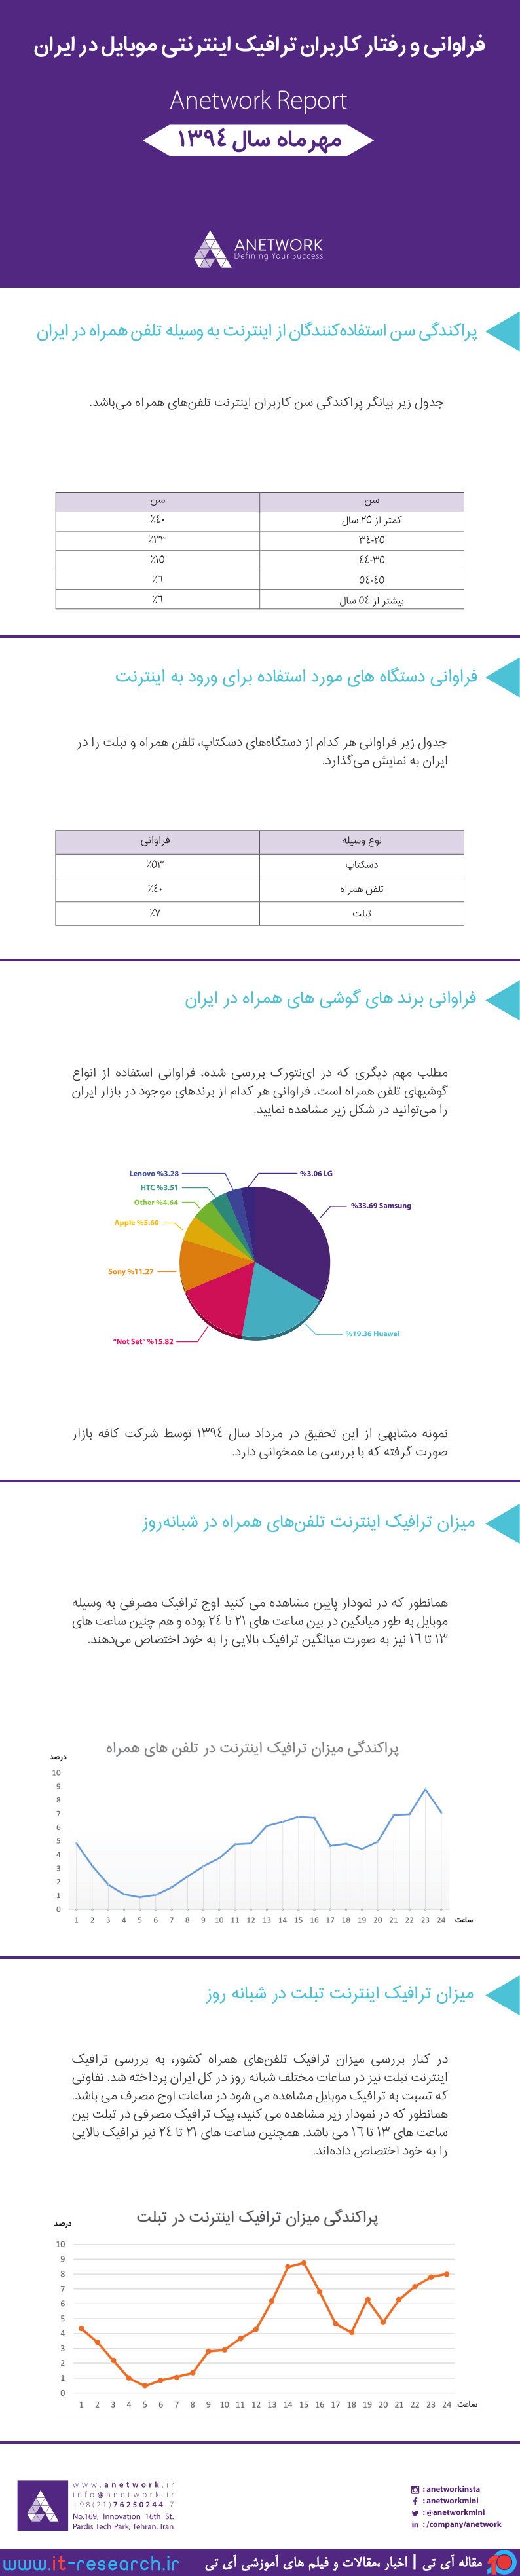 فراوانی و رفتار کاربران ترافیک اینترنتی موبایل در ایران